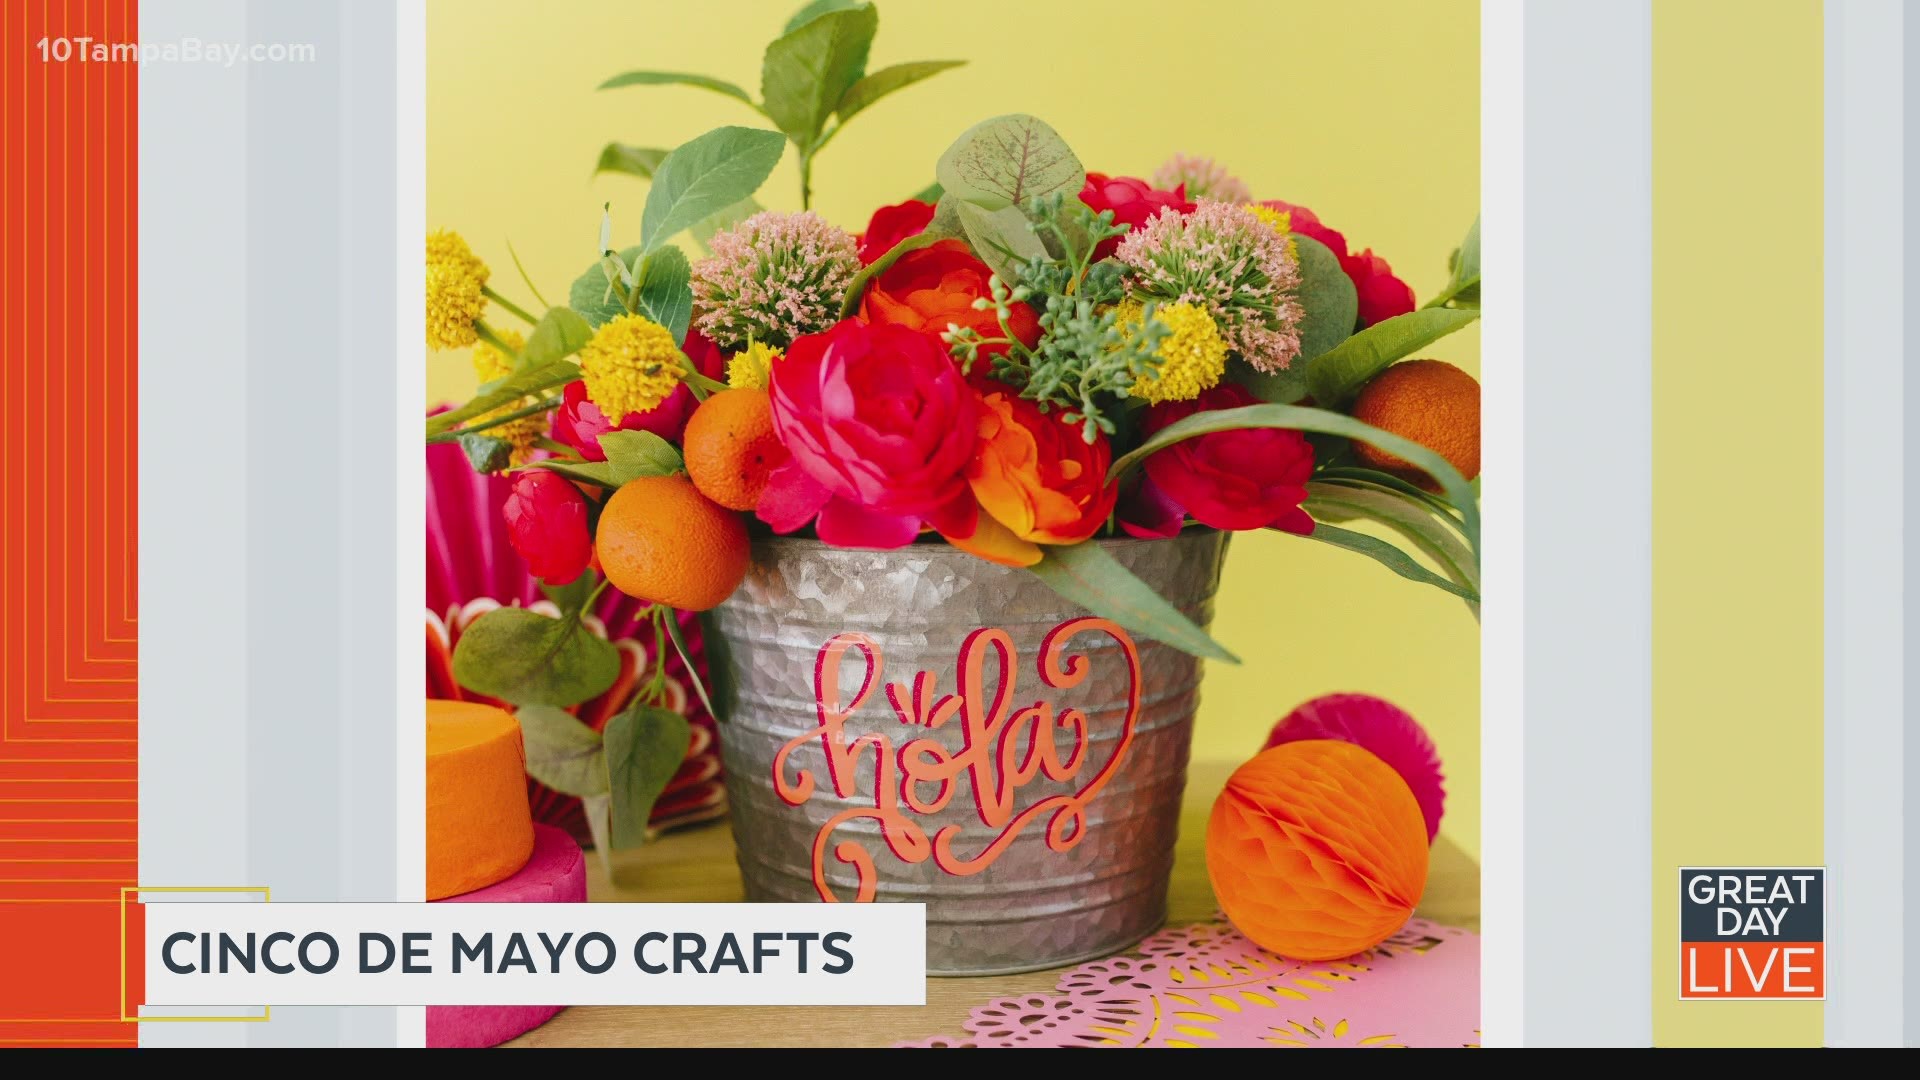 Cinco de Mayo crafts